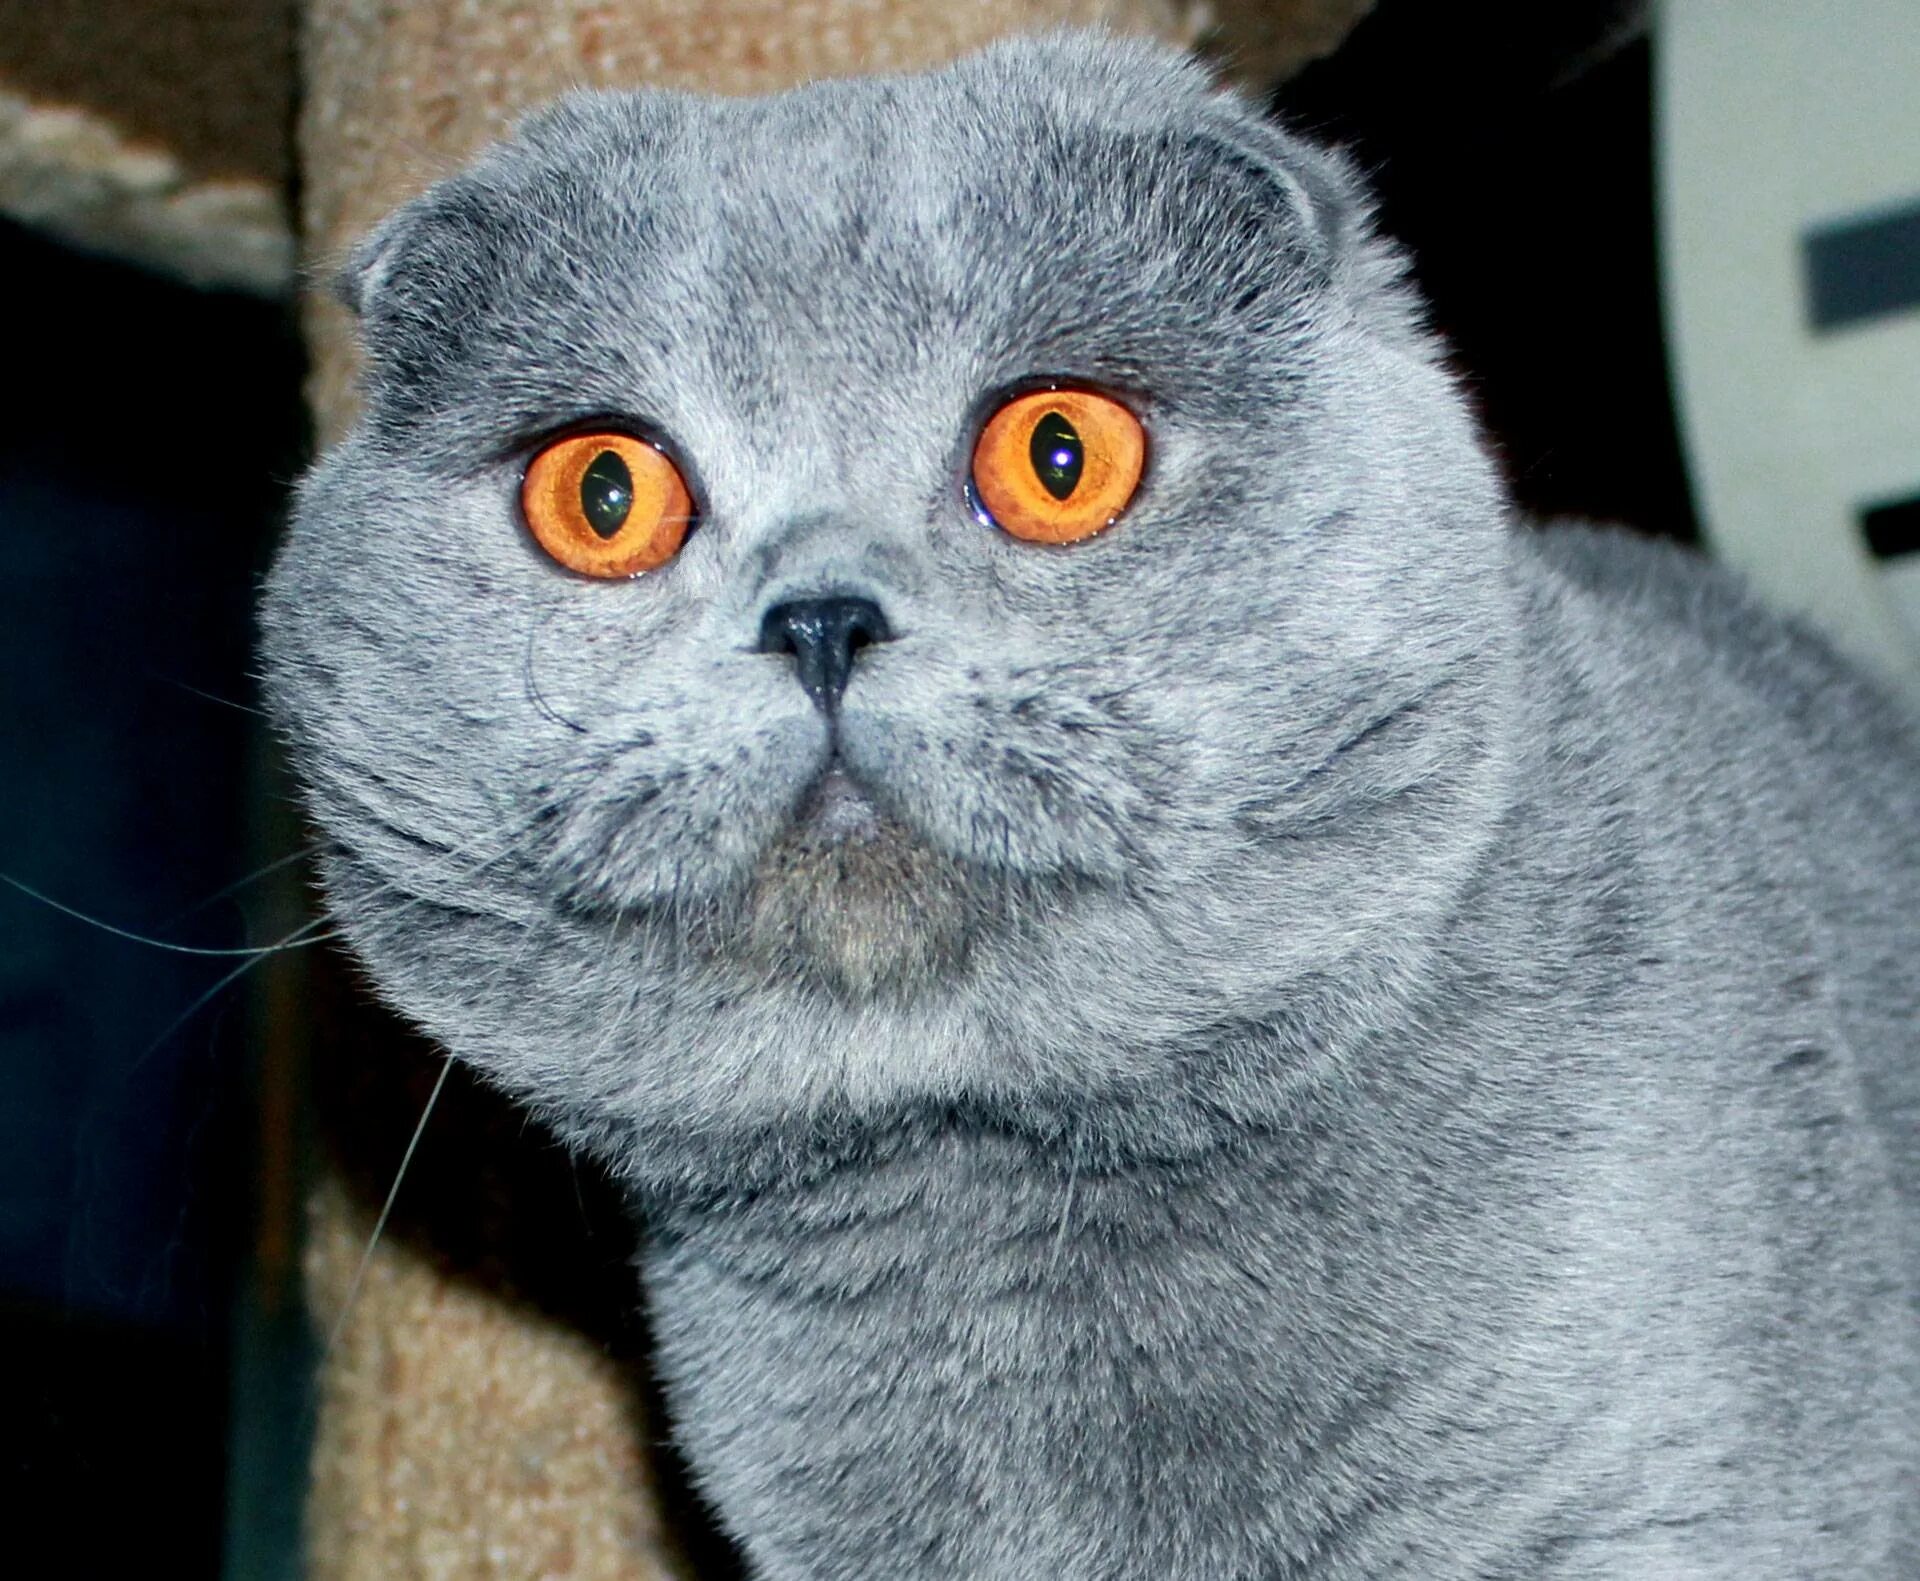 Шотландская британская разница. Ирландский вислоухий кот. Британская вислоухая кошка. Шотландская короткошёрстная кошка вислоухая. Британская короткошёрстная кошка вислоухая.